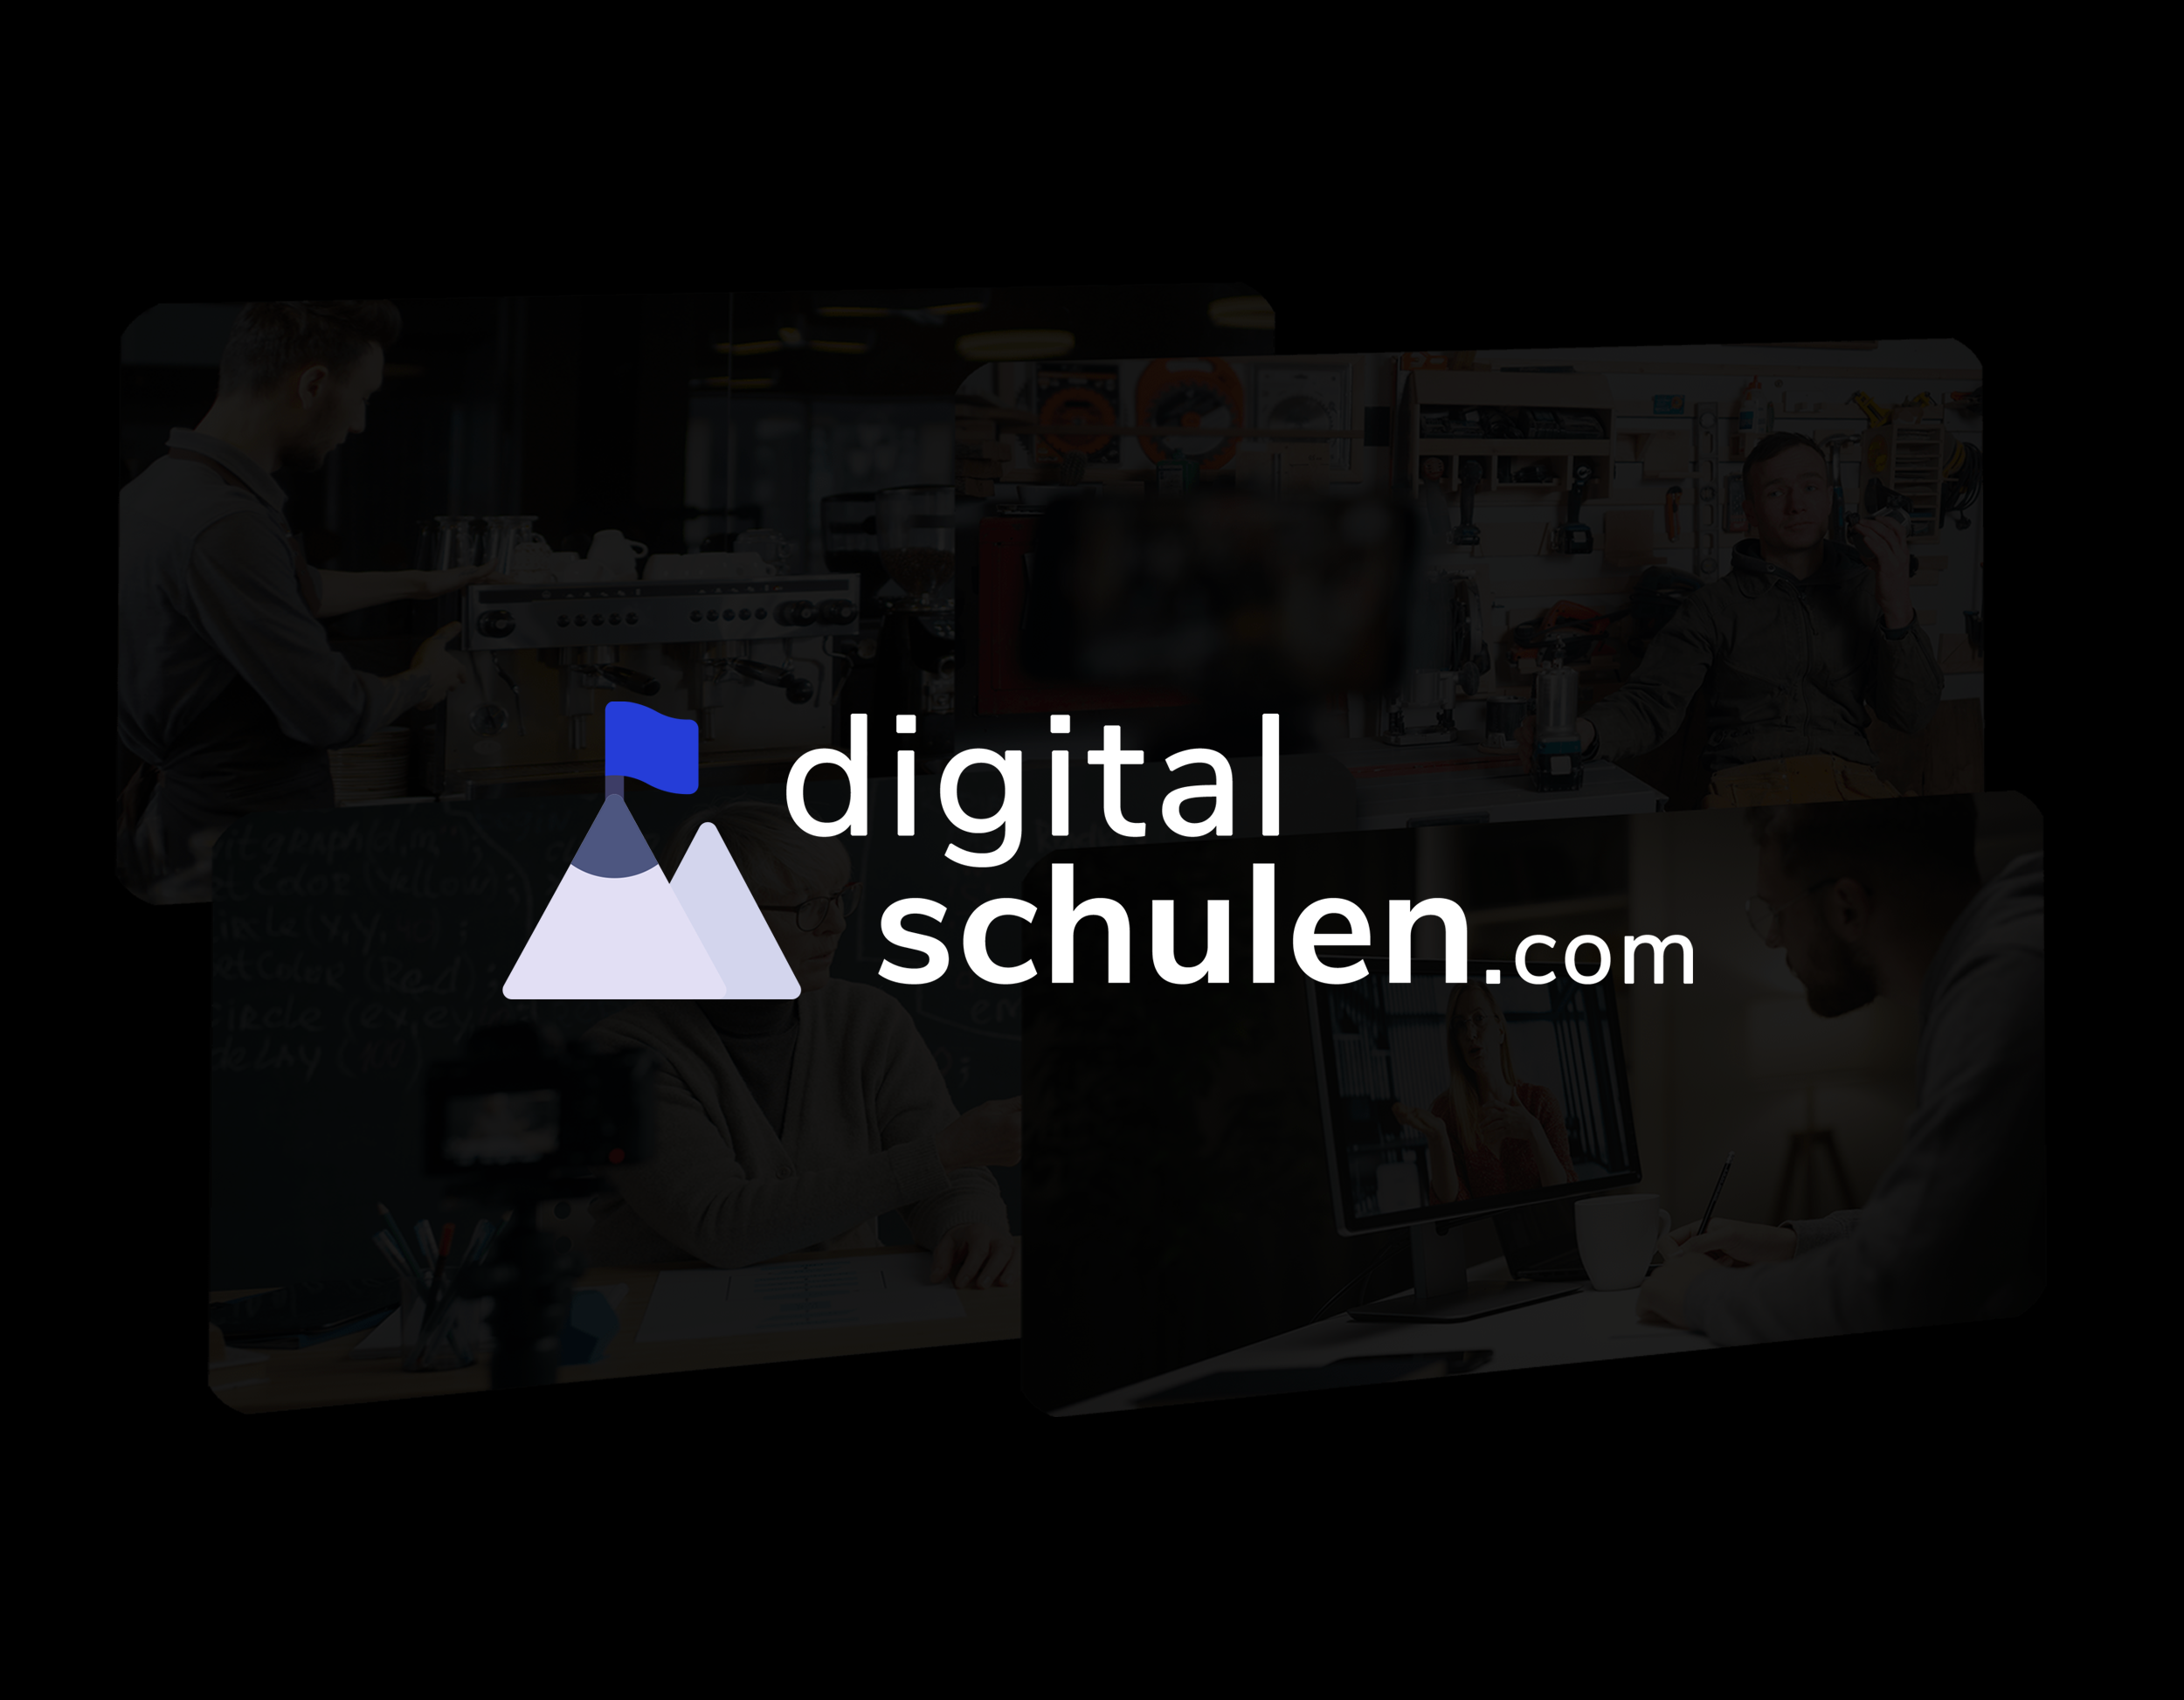 Mockup DigitalSchulen.com